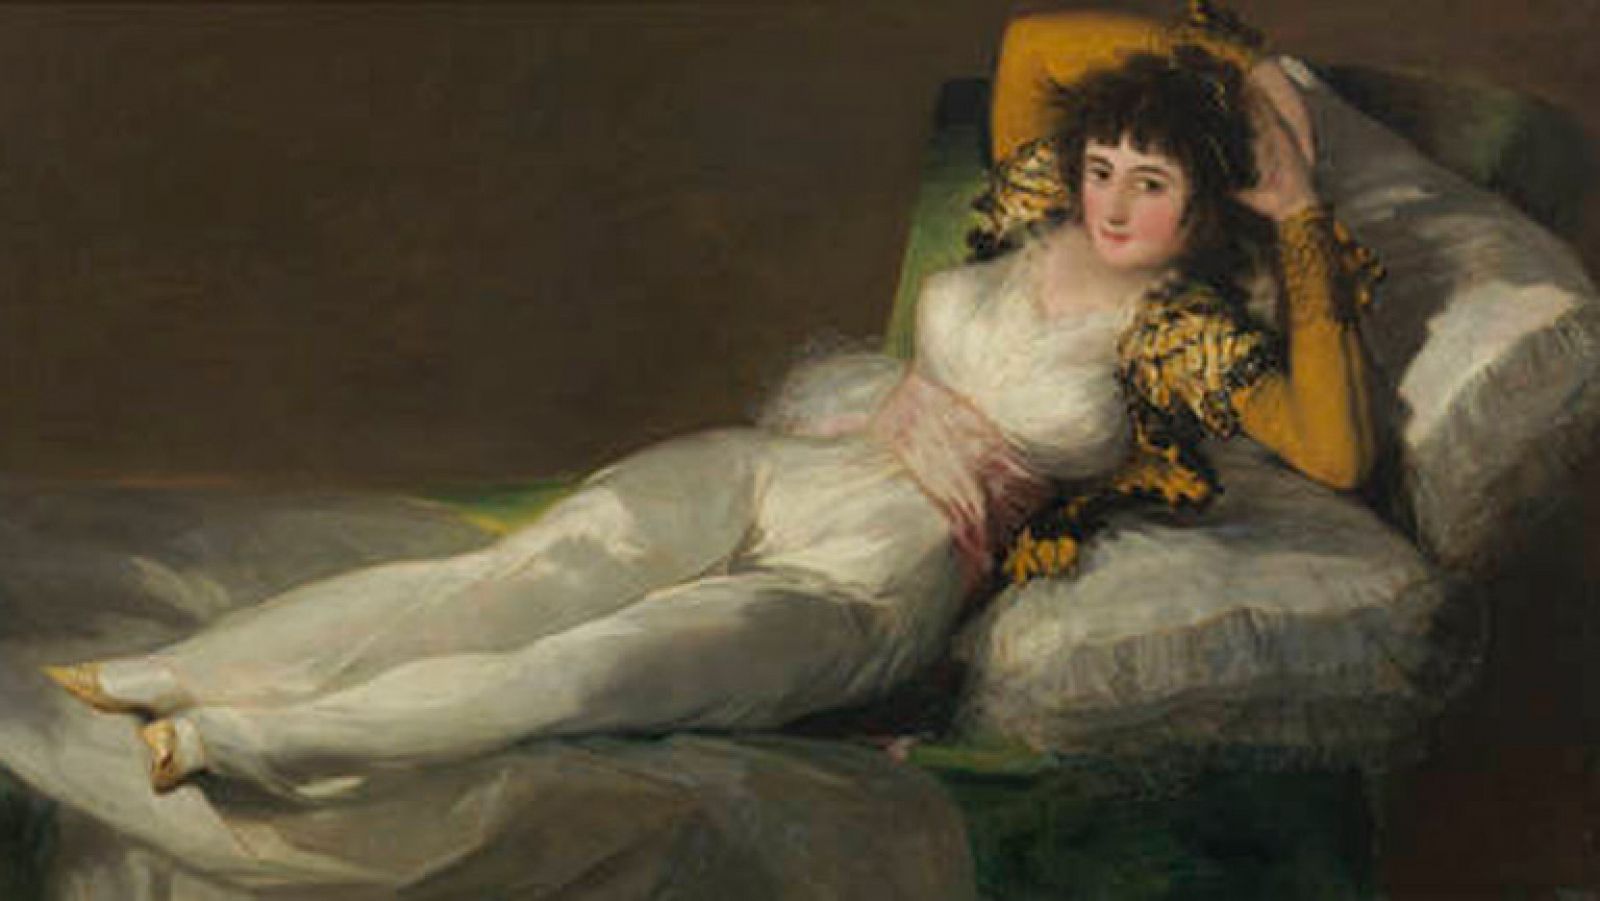 Mirar un cuadro - La maja vestida (Goya)